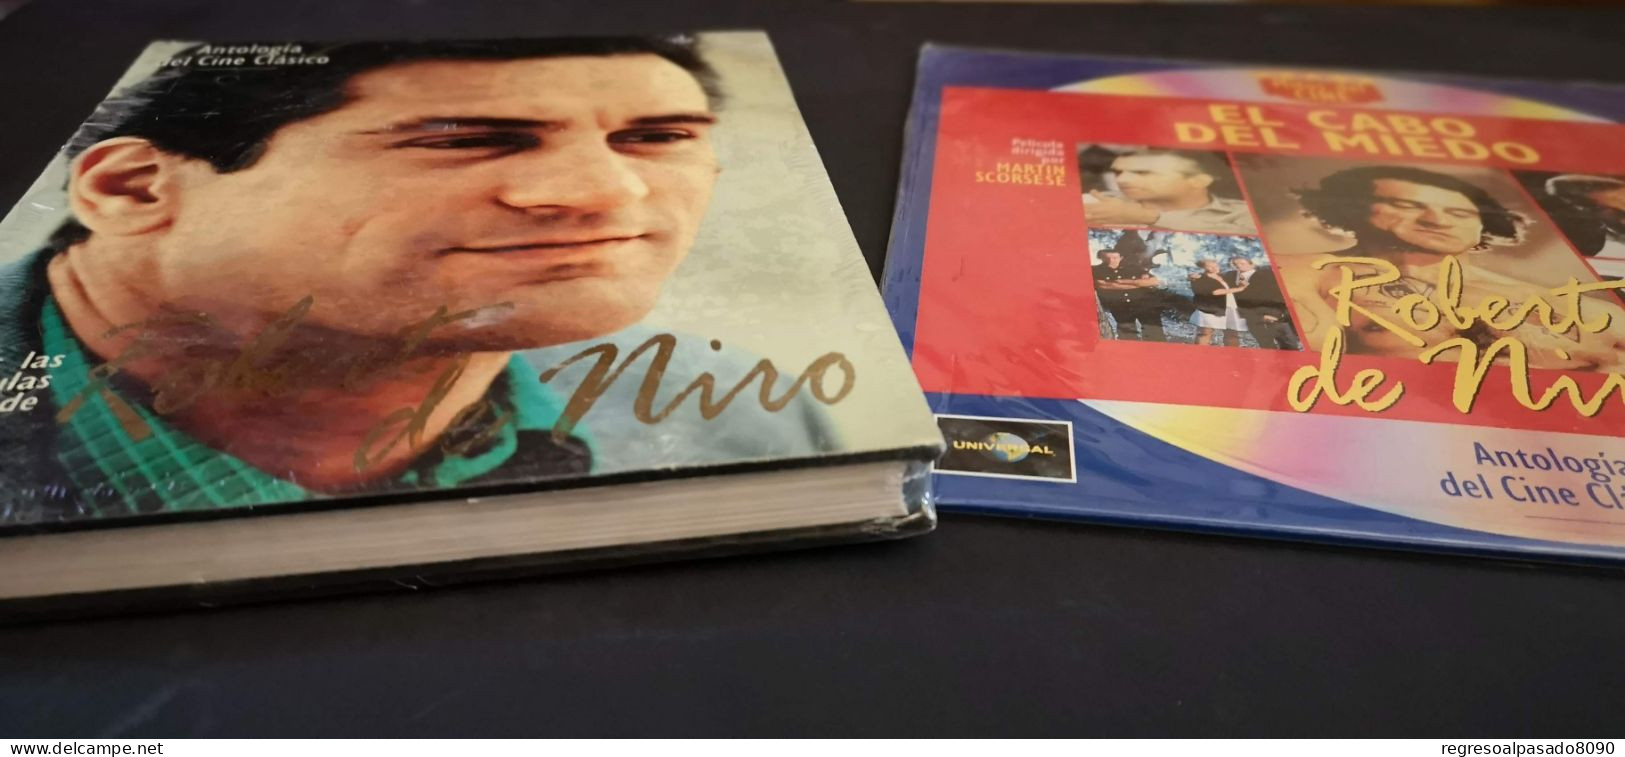 Robert De Niro Libro Y Película Laser Disc Laserdisc El Cabo Del Miedo. Mitos Del Cine Planeta Años 90 - Classici